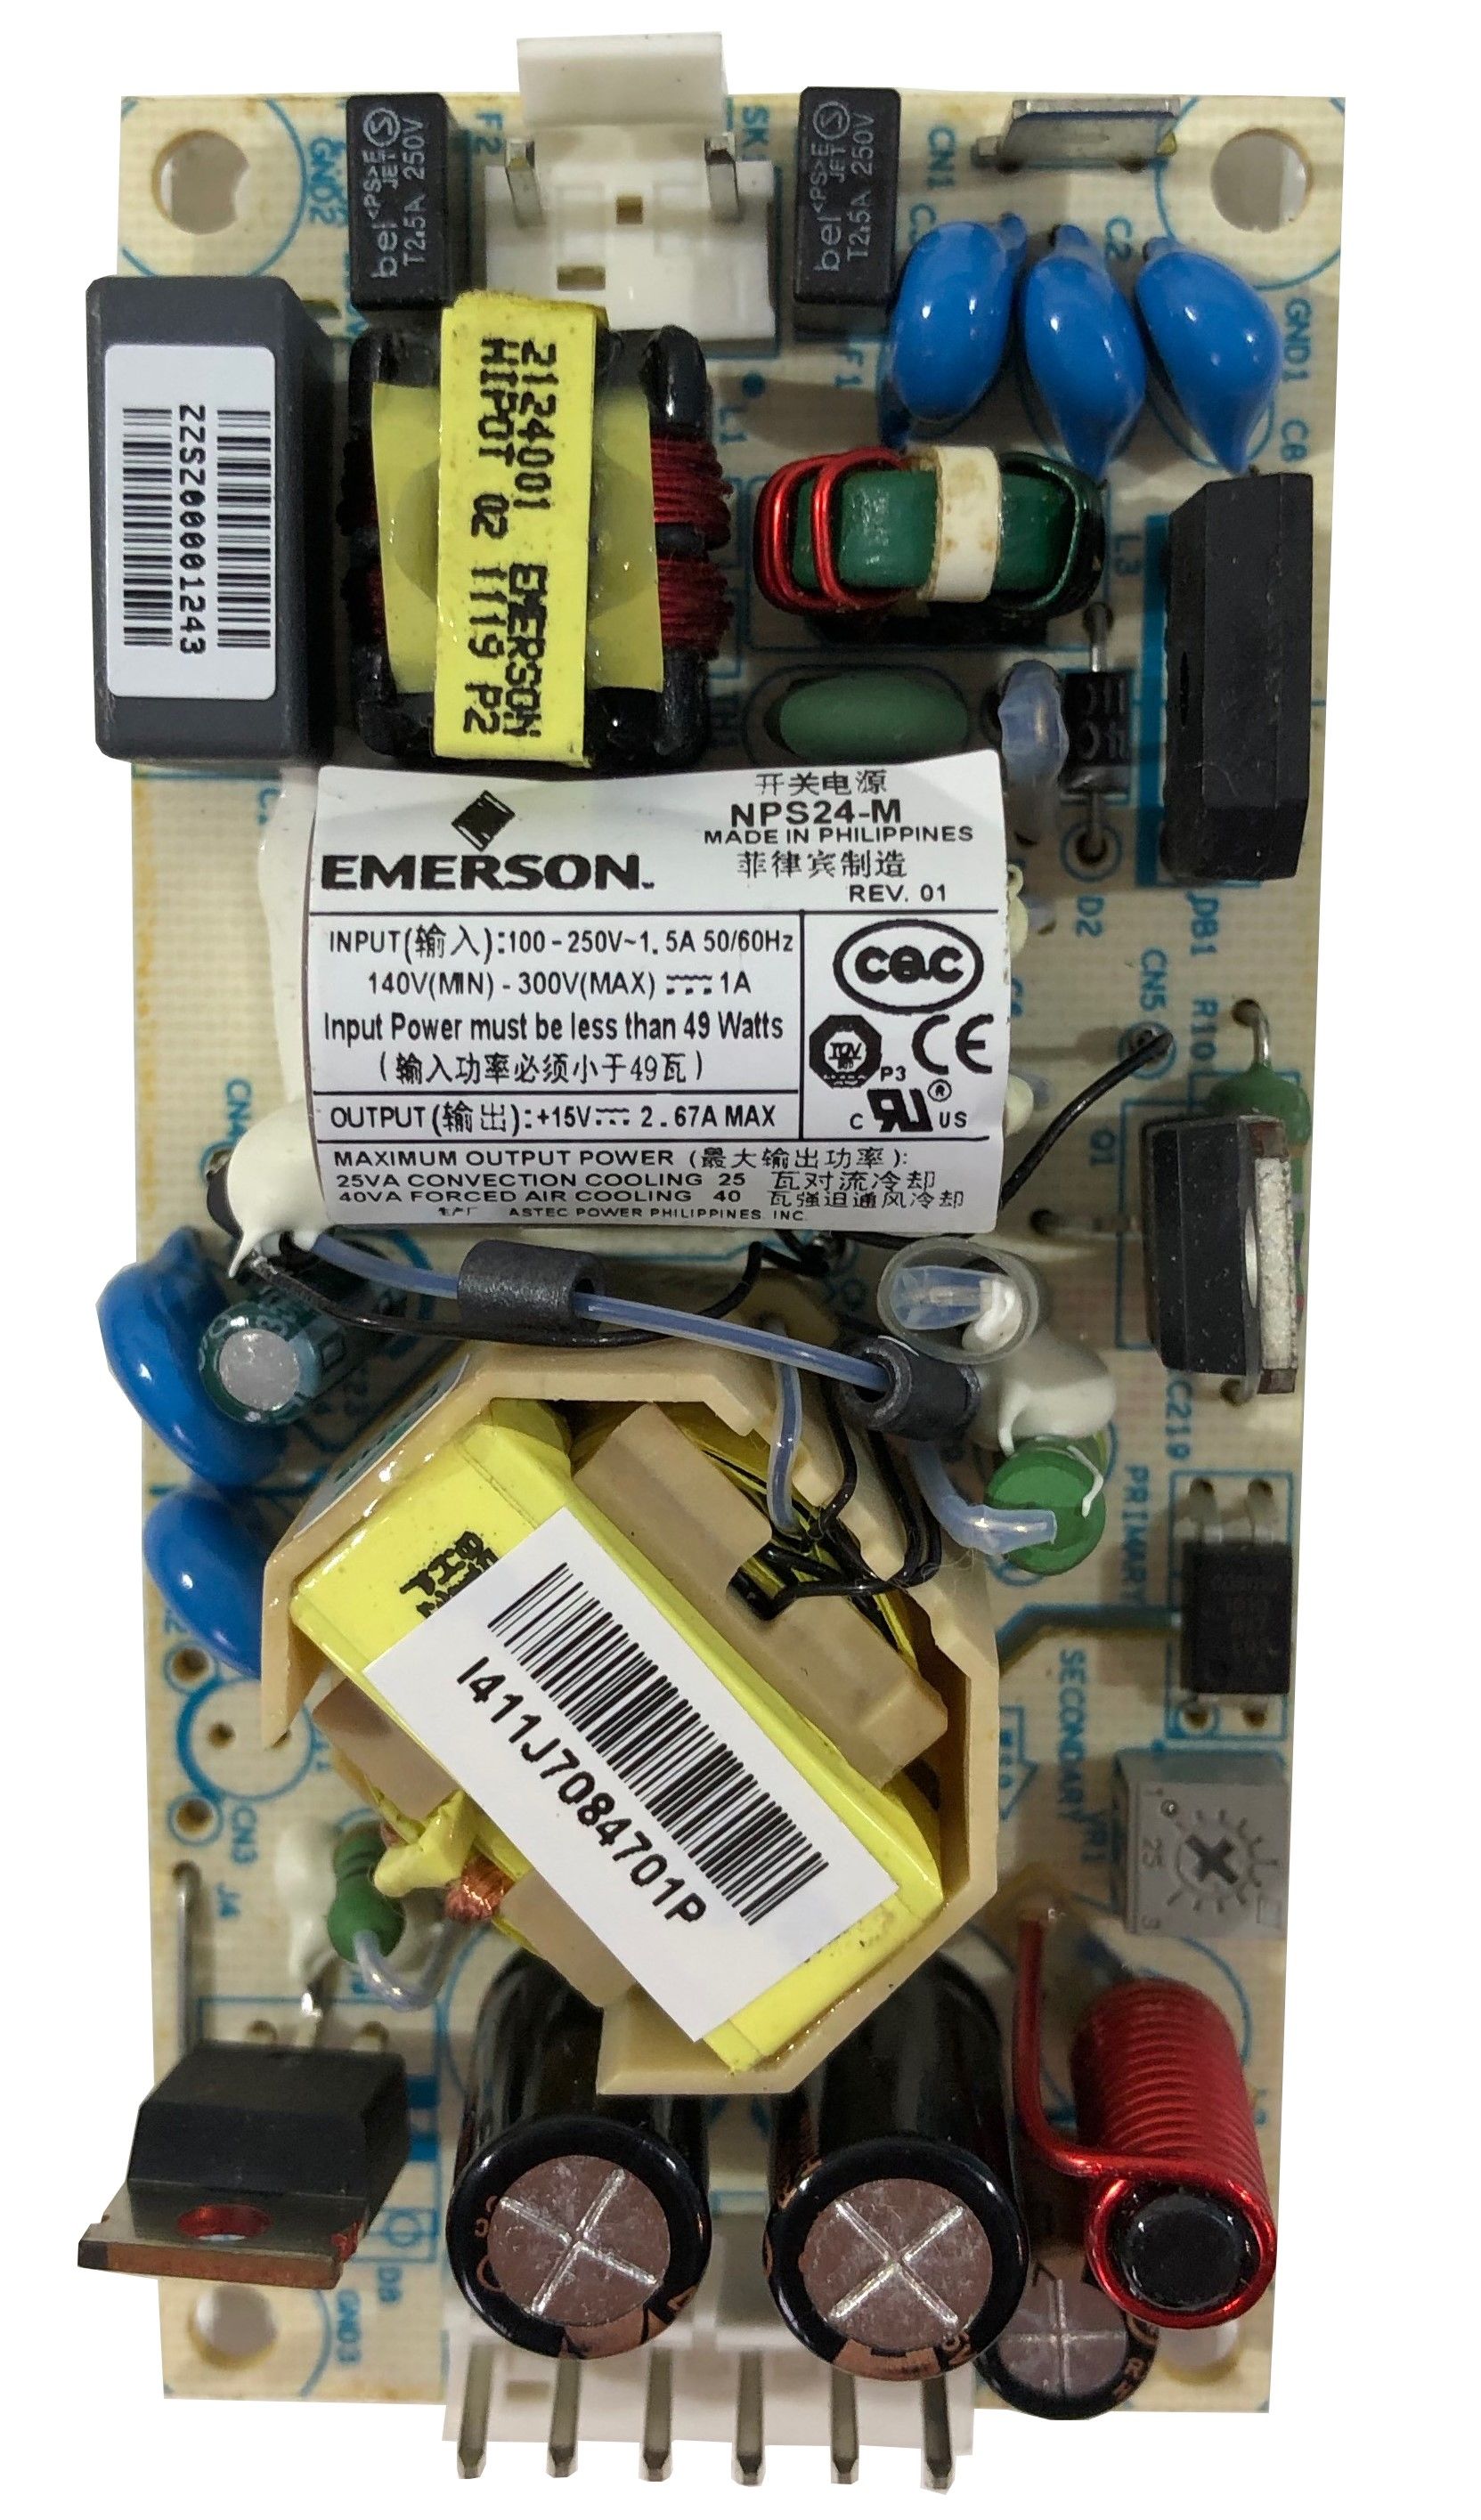 Emerson NPS24-M Einbau Schaltnetzteil 15V 3A 40W mit medizinischer Zulassung